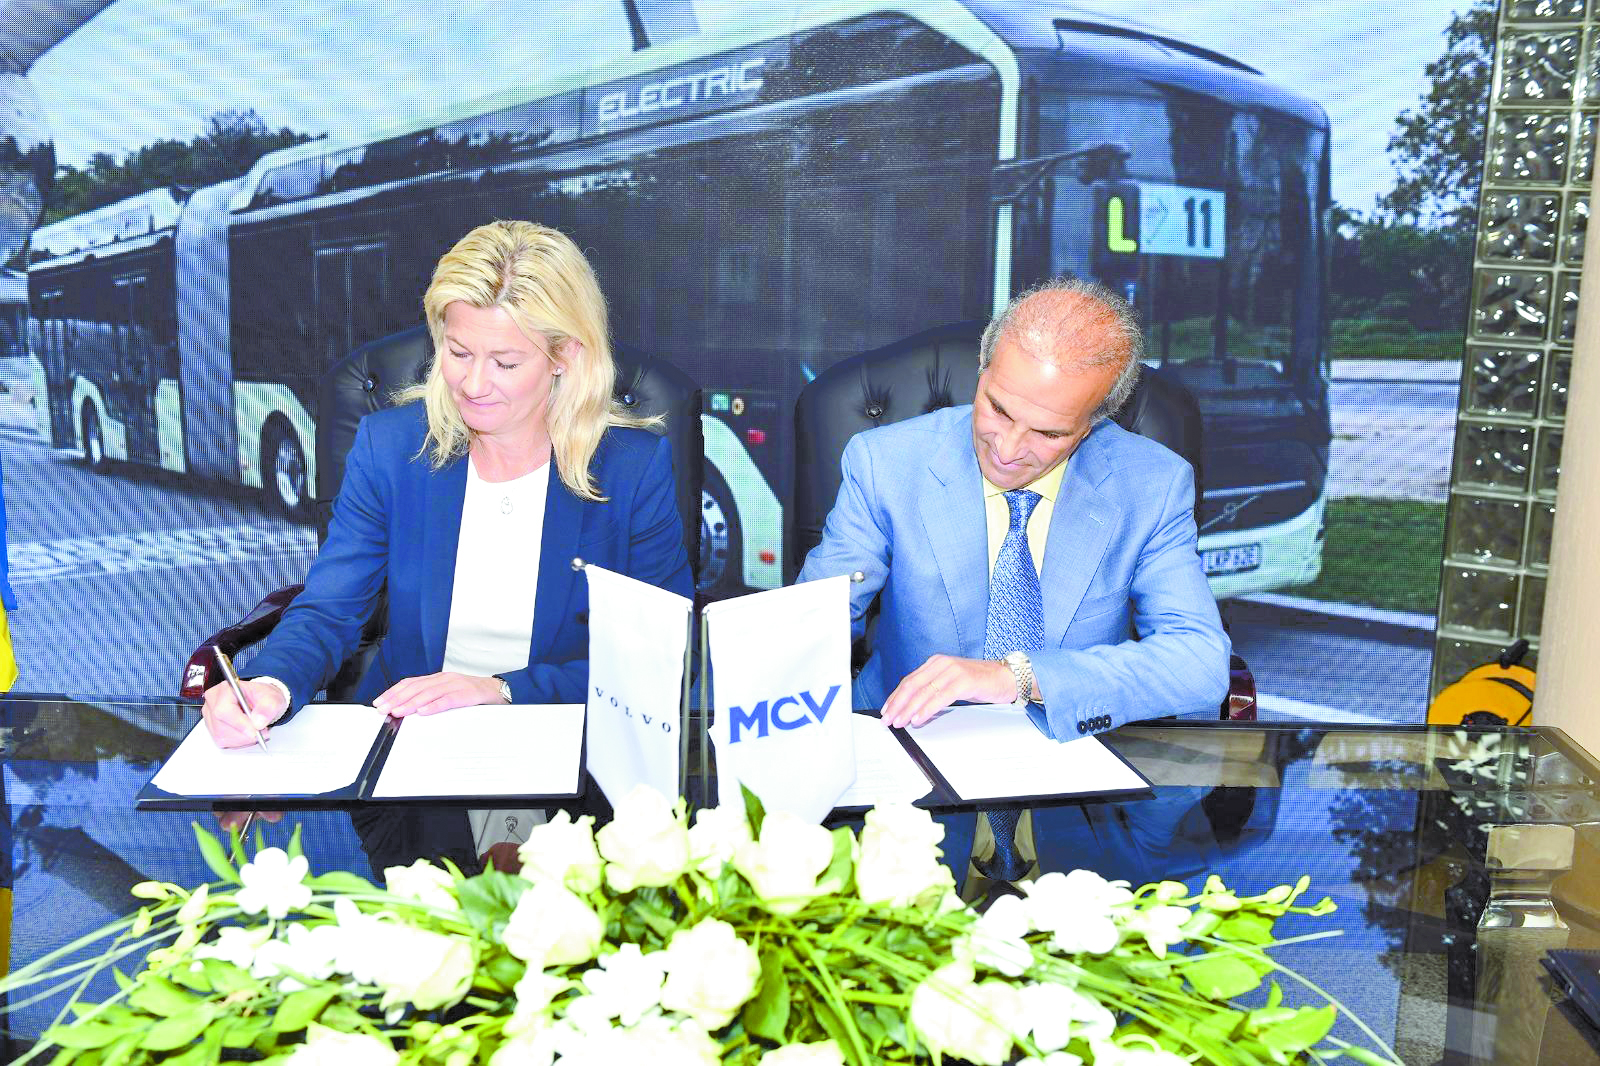 شركة MCV و Volvo العالمية: تصنيع الأتوبيسات الكهربائية فى مصر وتصديرها للسوق الأوروبية